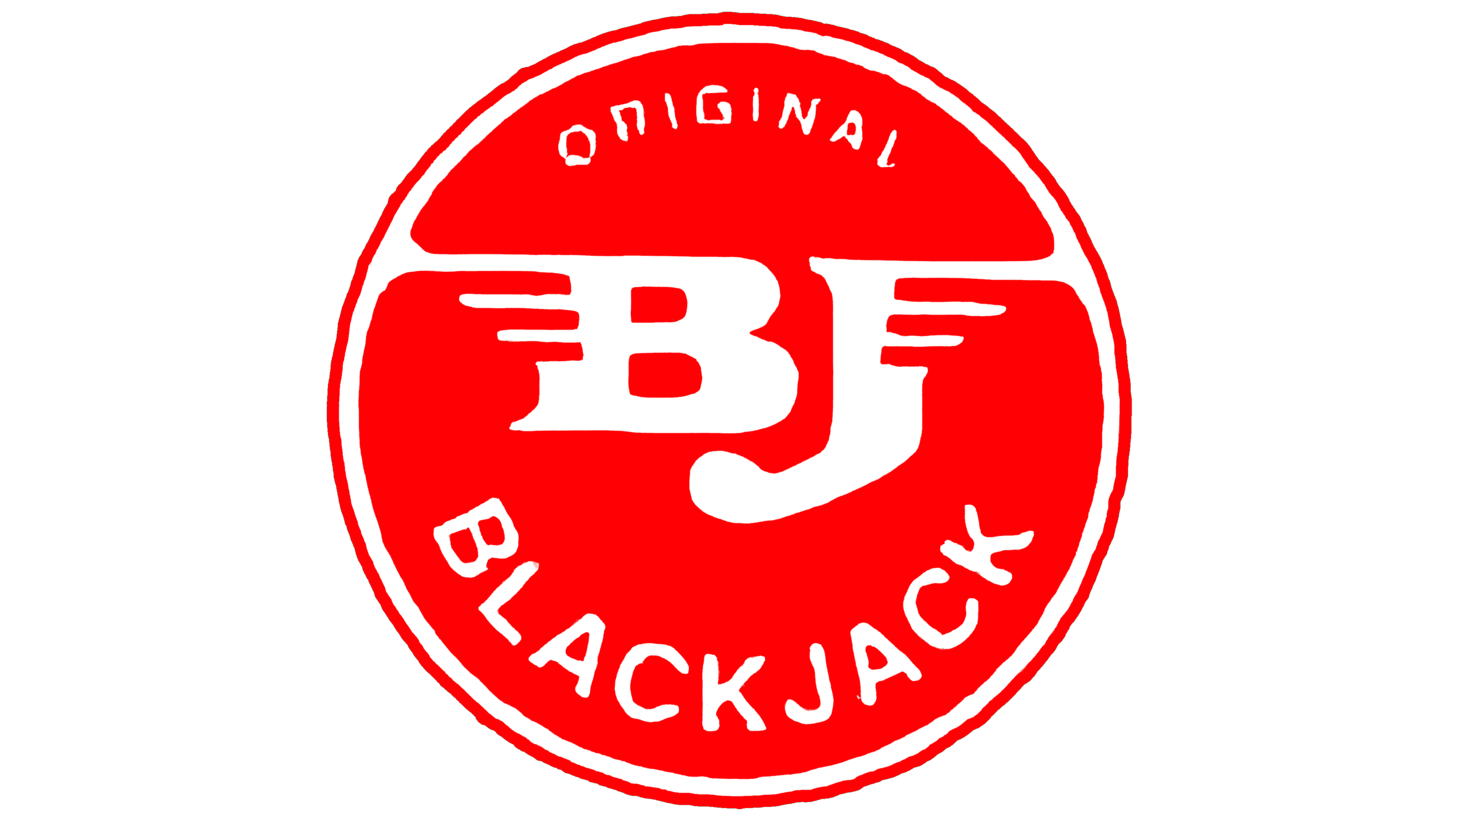 Blackjack cars sign